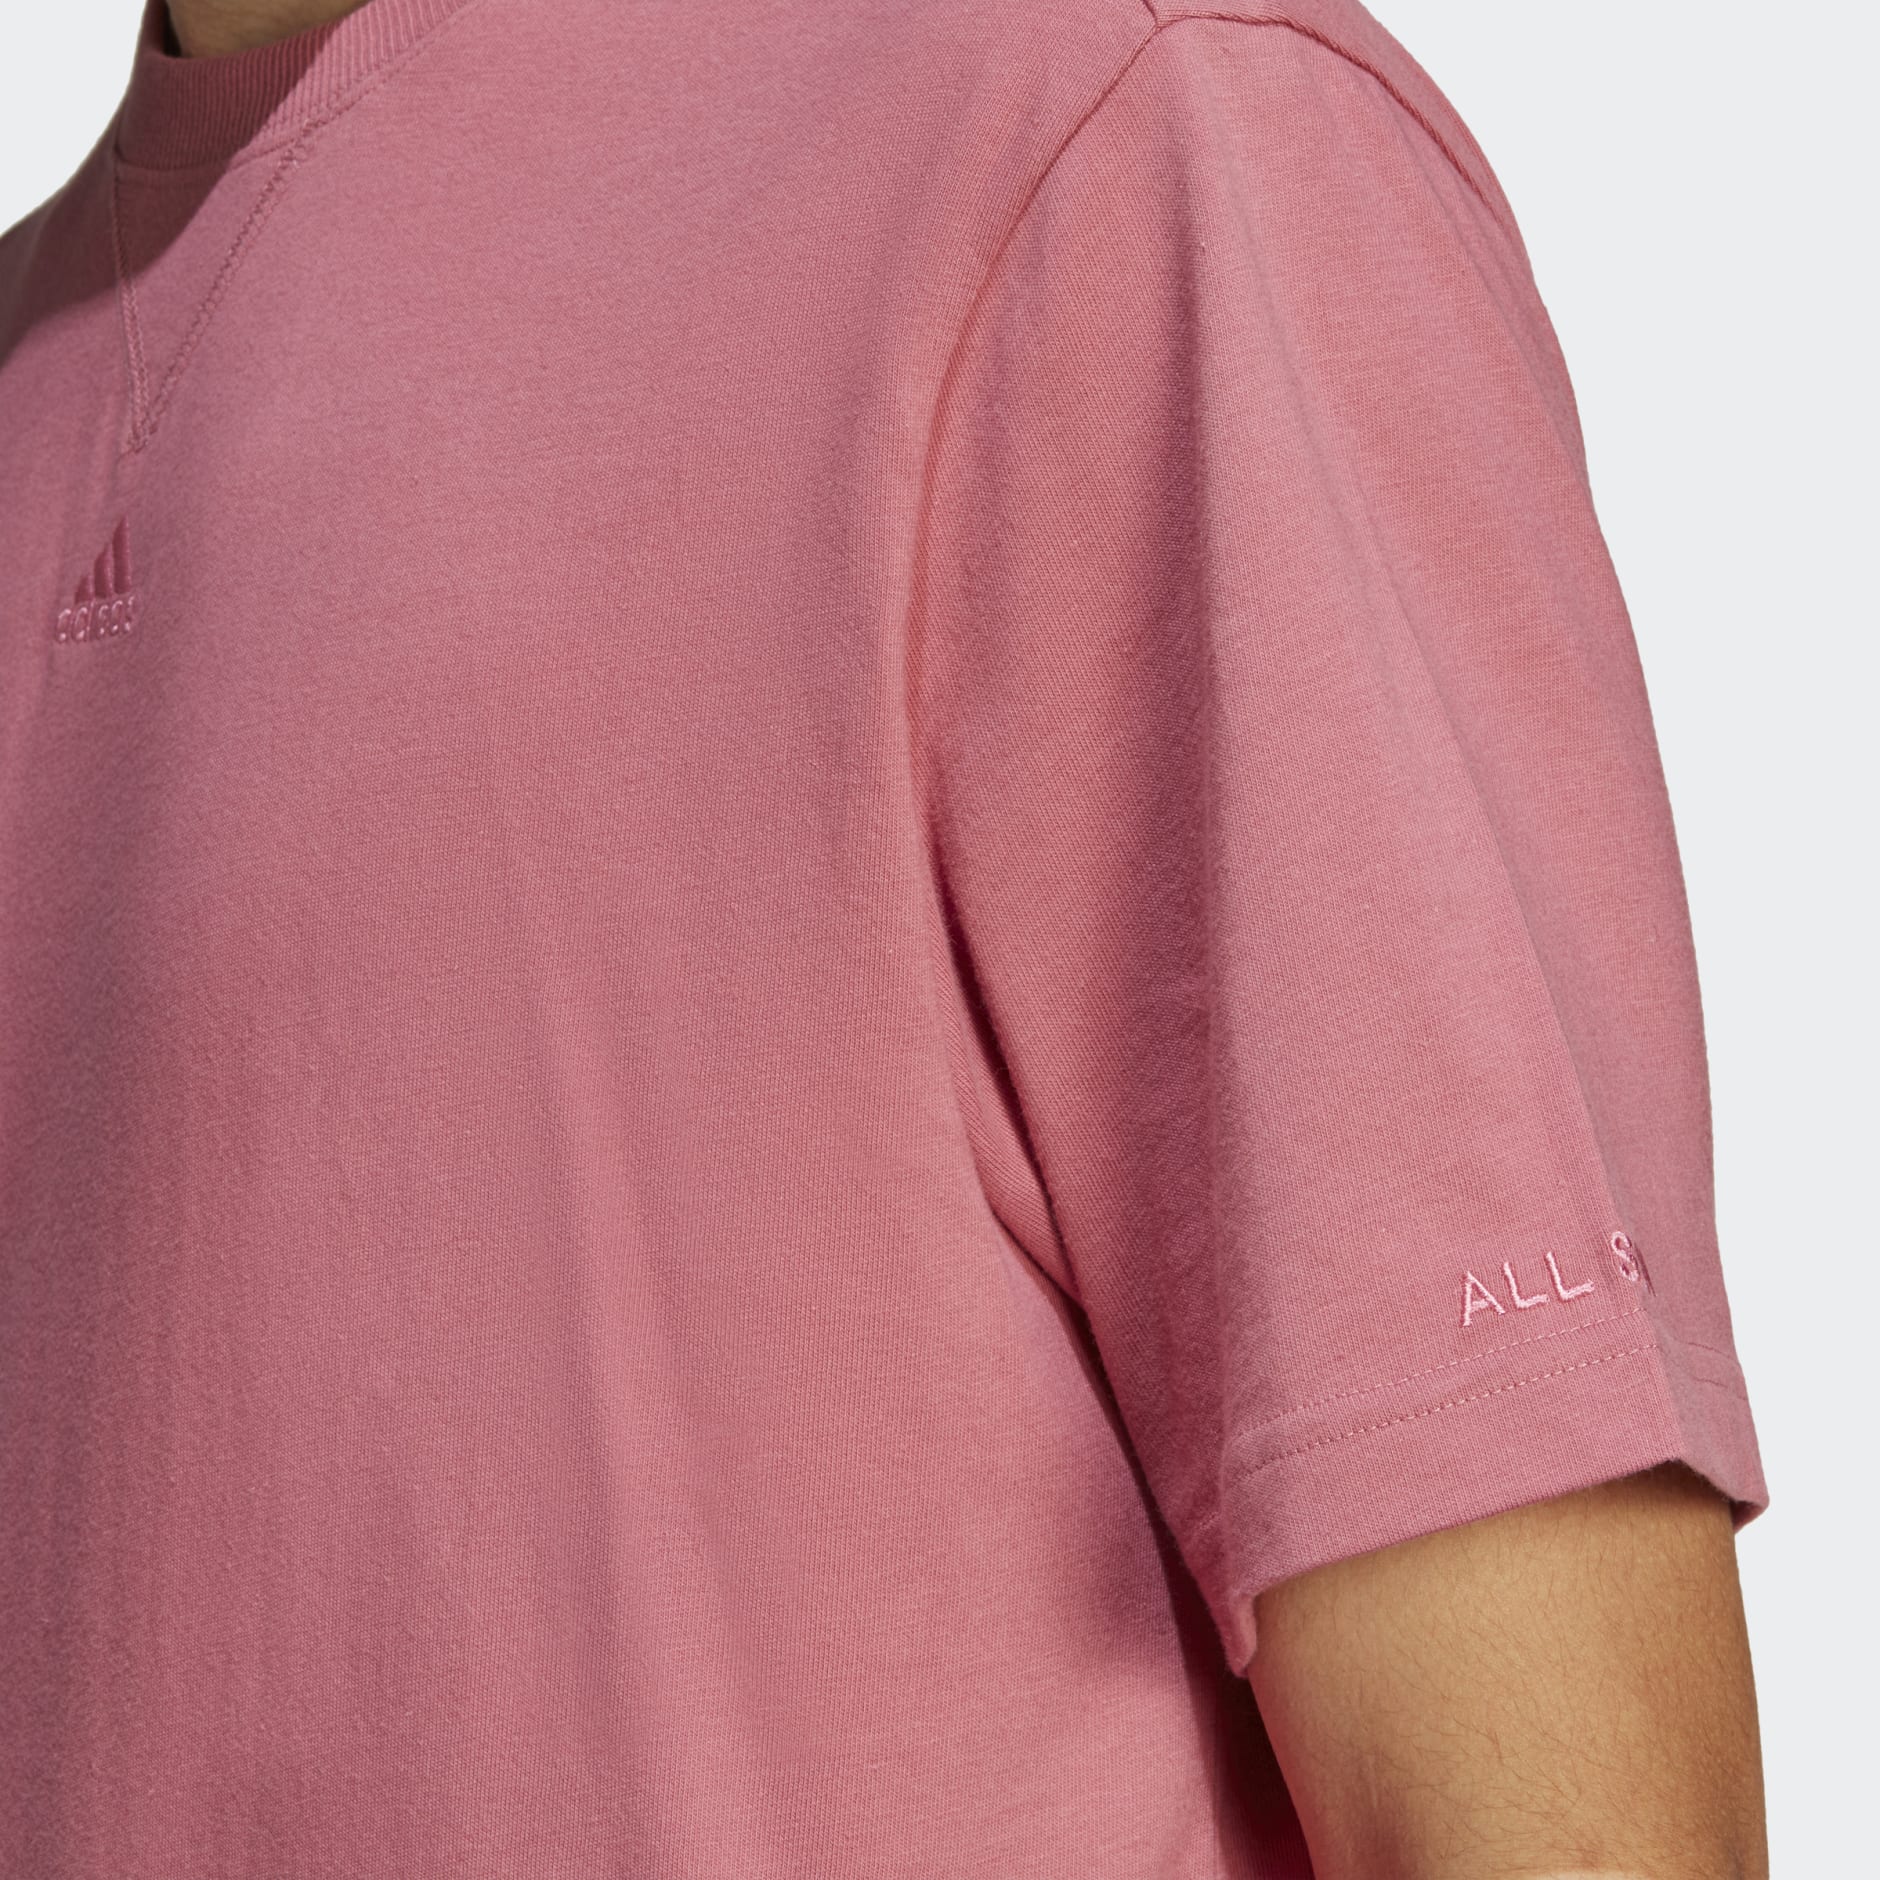 Tee SZN - Israel | Clothing - ALL Pink adidas